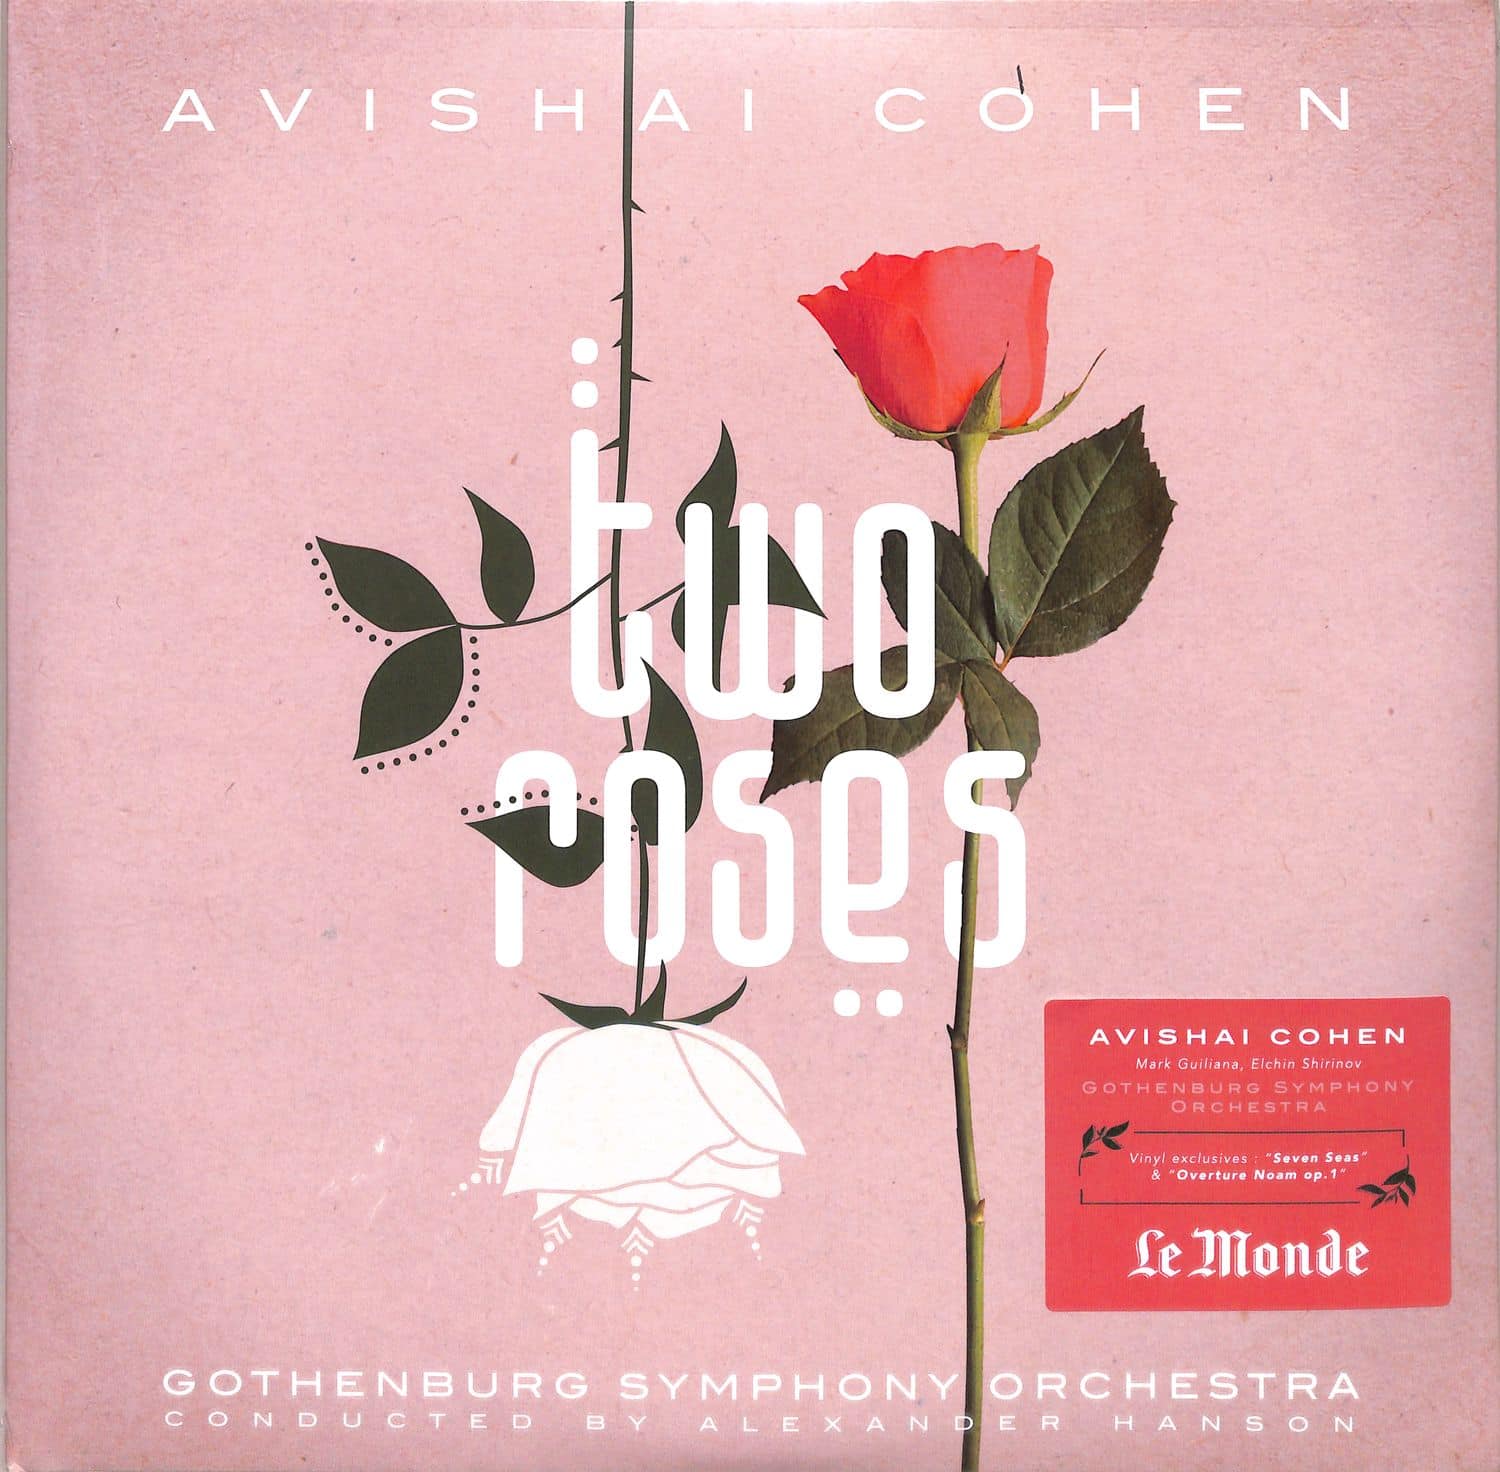 Avishai Cohen - TWO ROSES-FEAT. GOTHENBURG SYMPHONY ORCHESTRA 